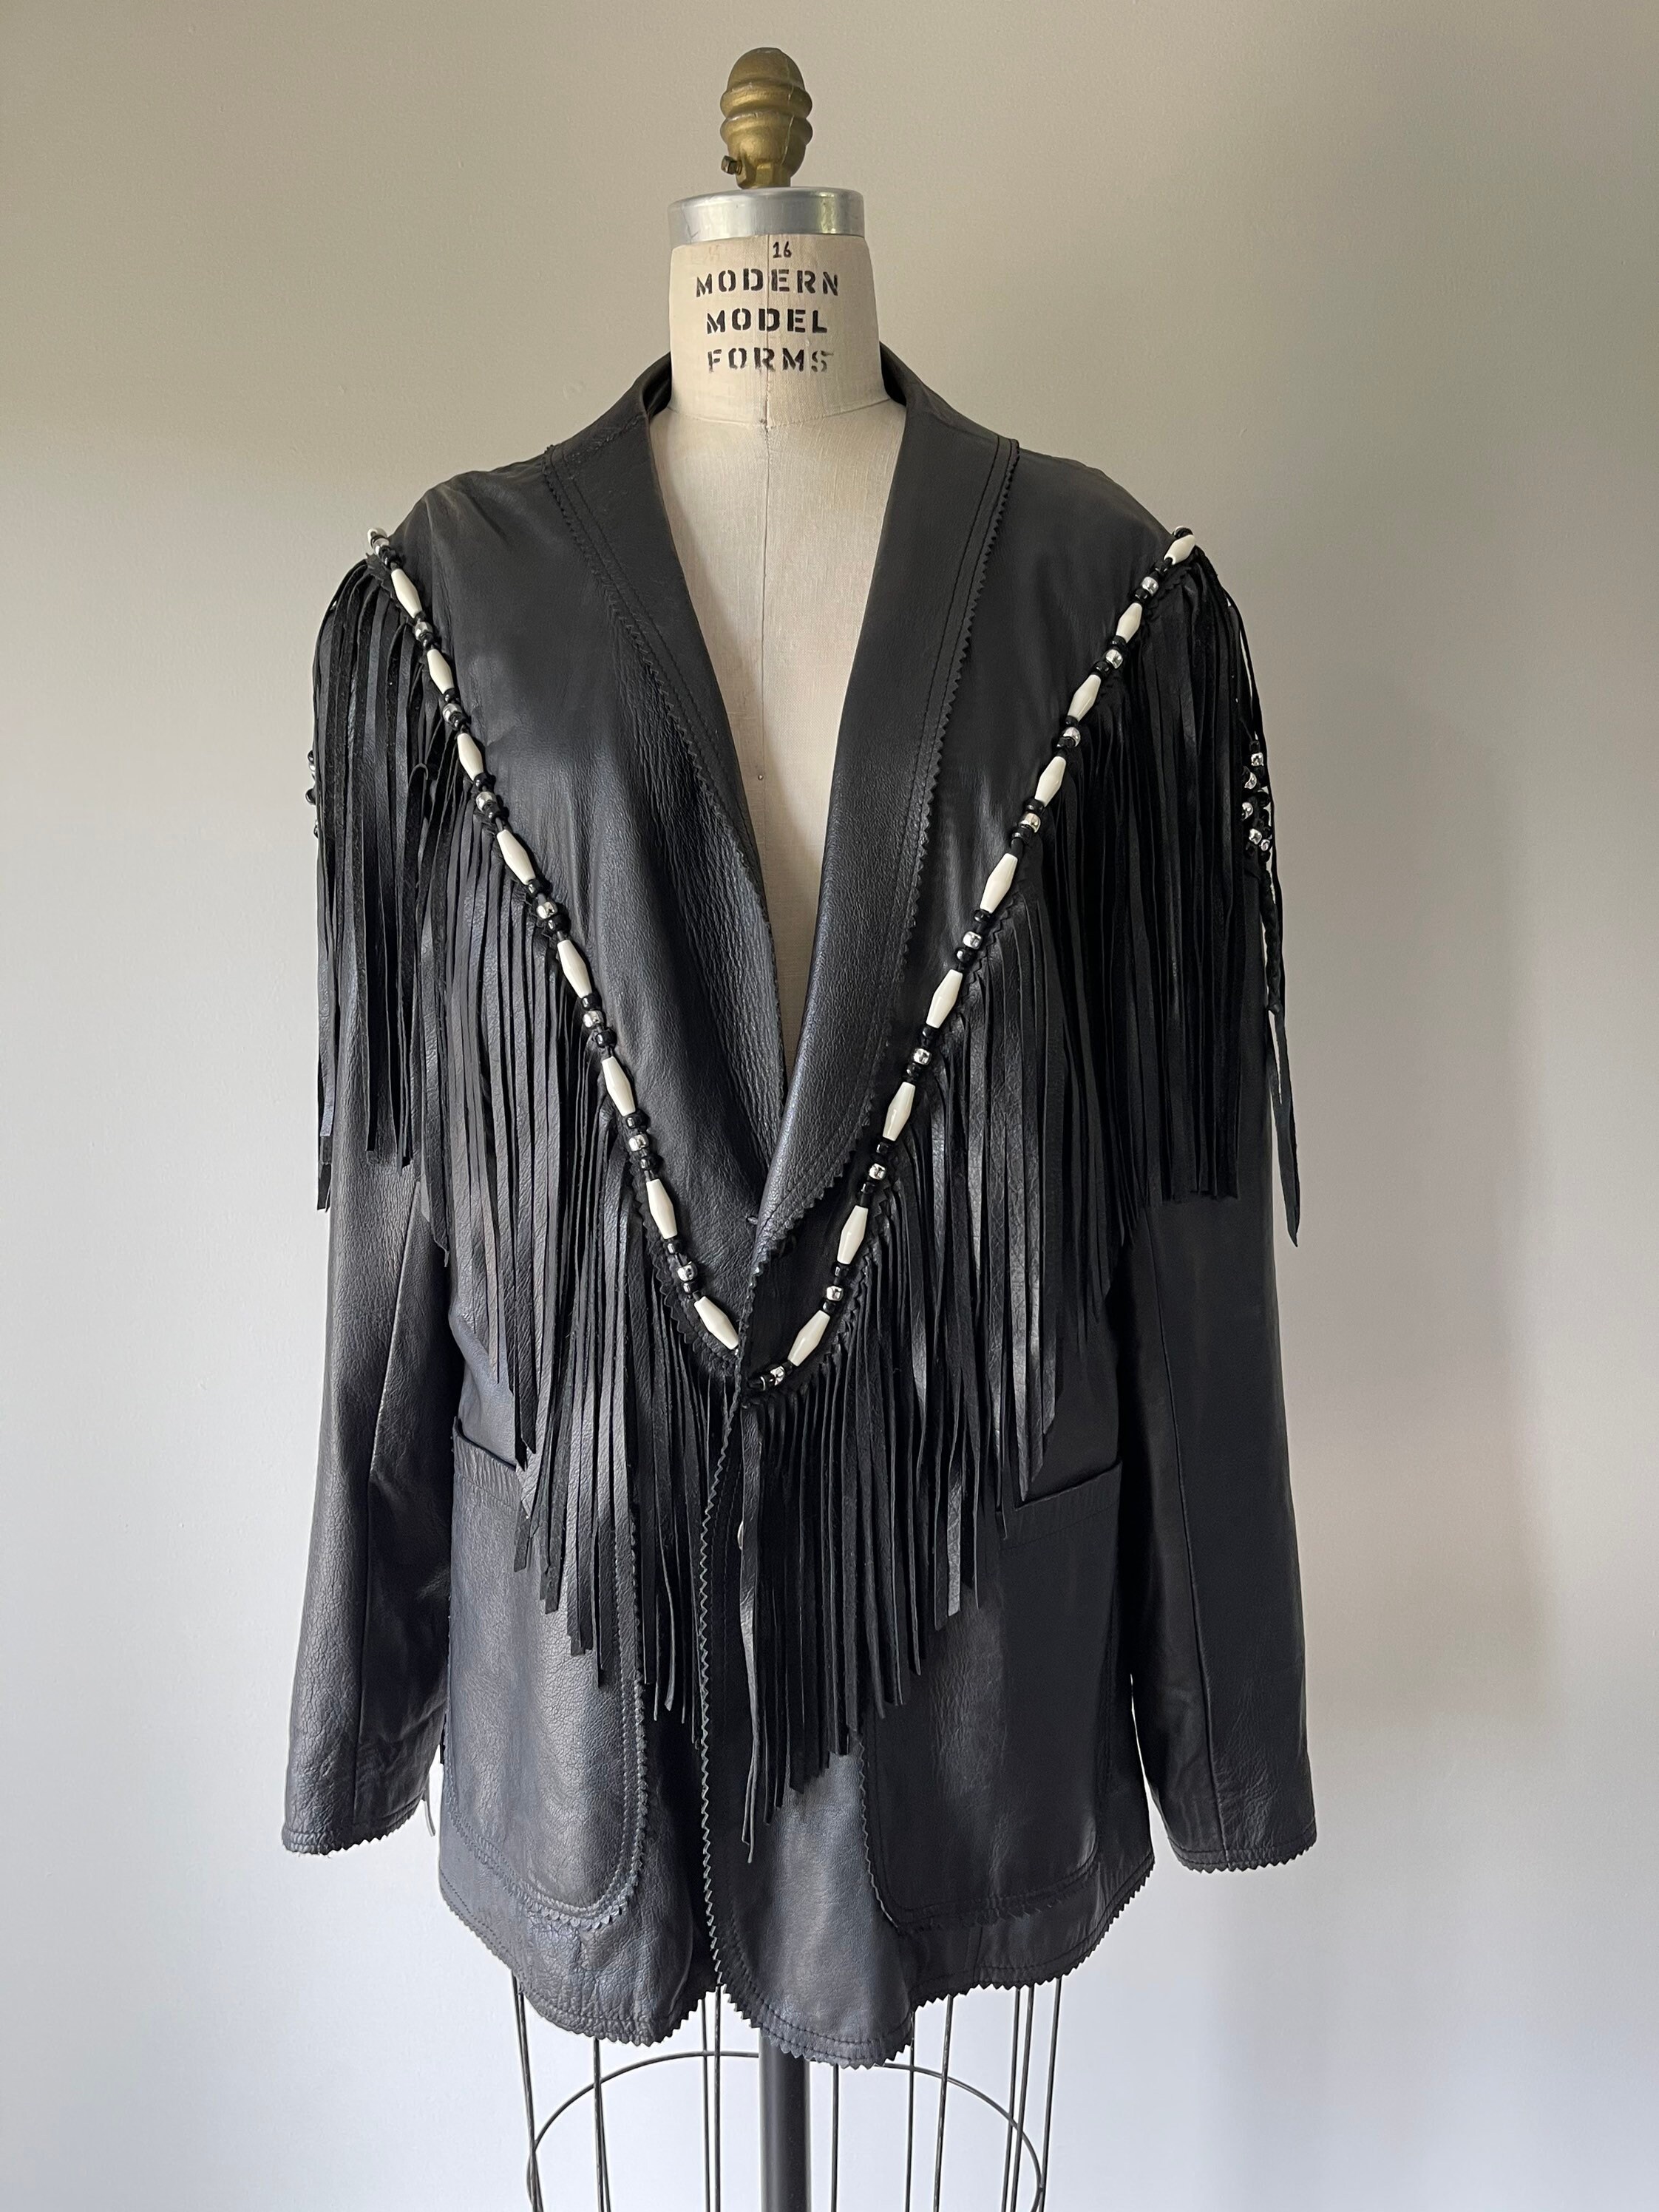 South western fringe black leather jacket / beaded leather | Etsy